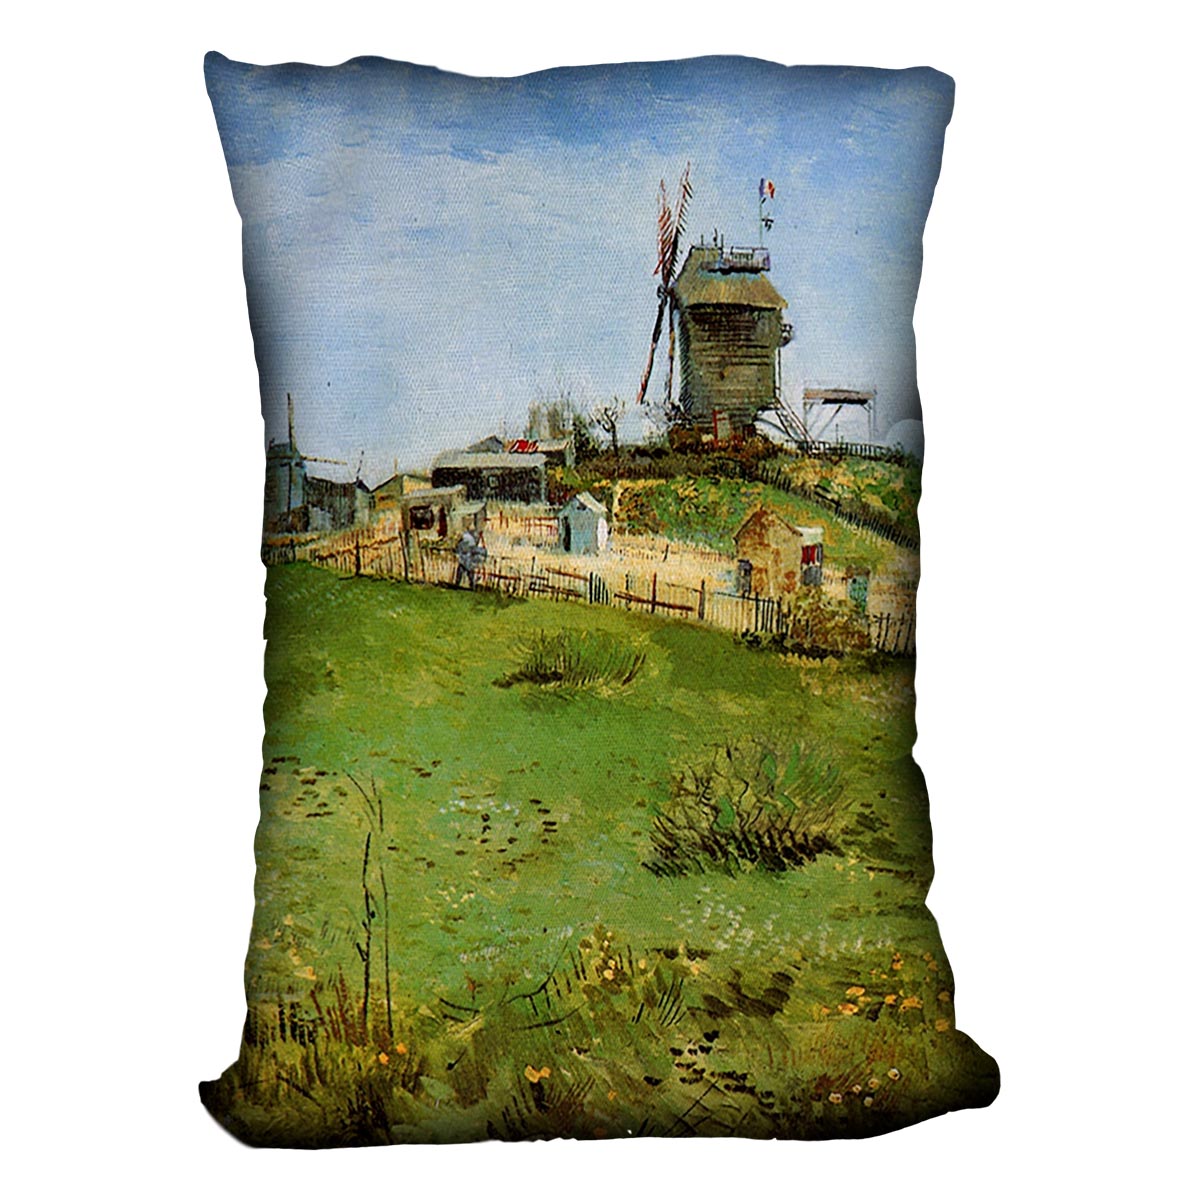 Le Moulin de la Galette 4 by Van Gogh Cushion